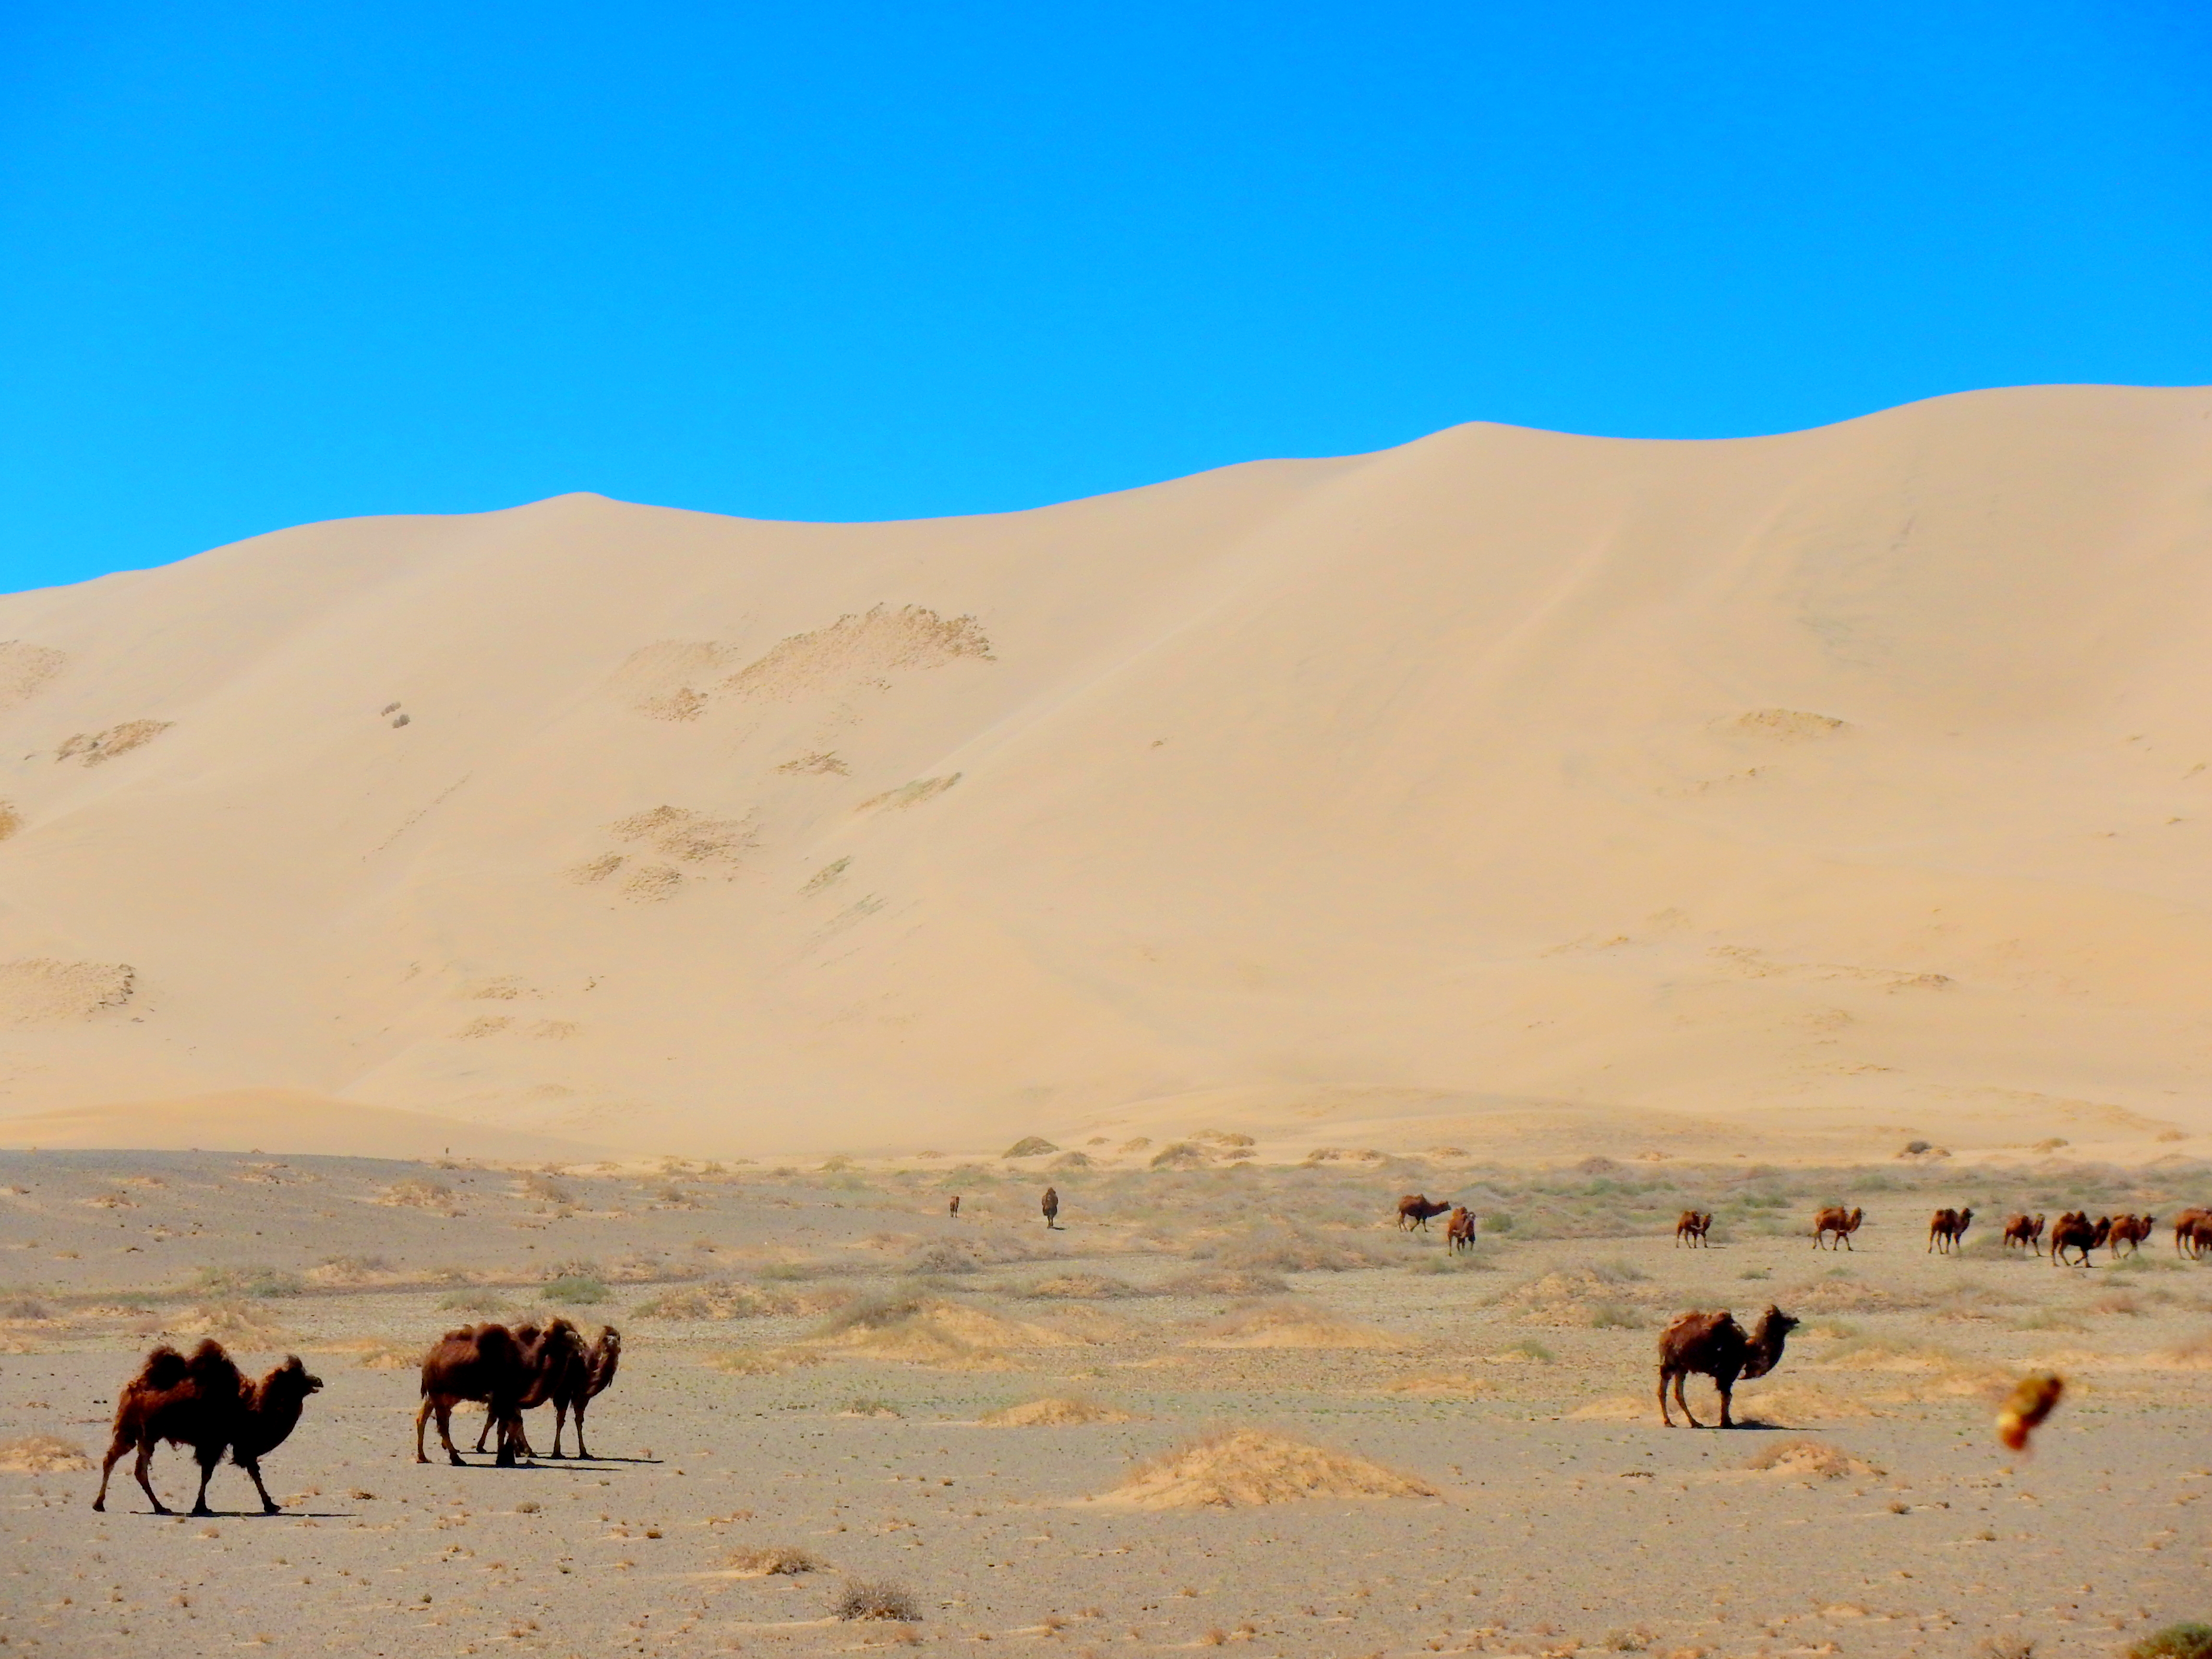 Wild camels in the Singing Dunes of Khongoriin Els, Gobi Desert, Mongolia